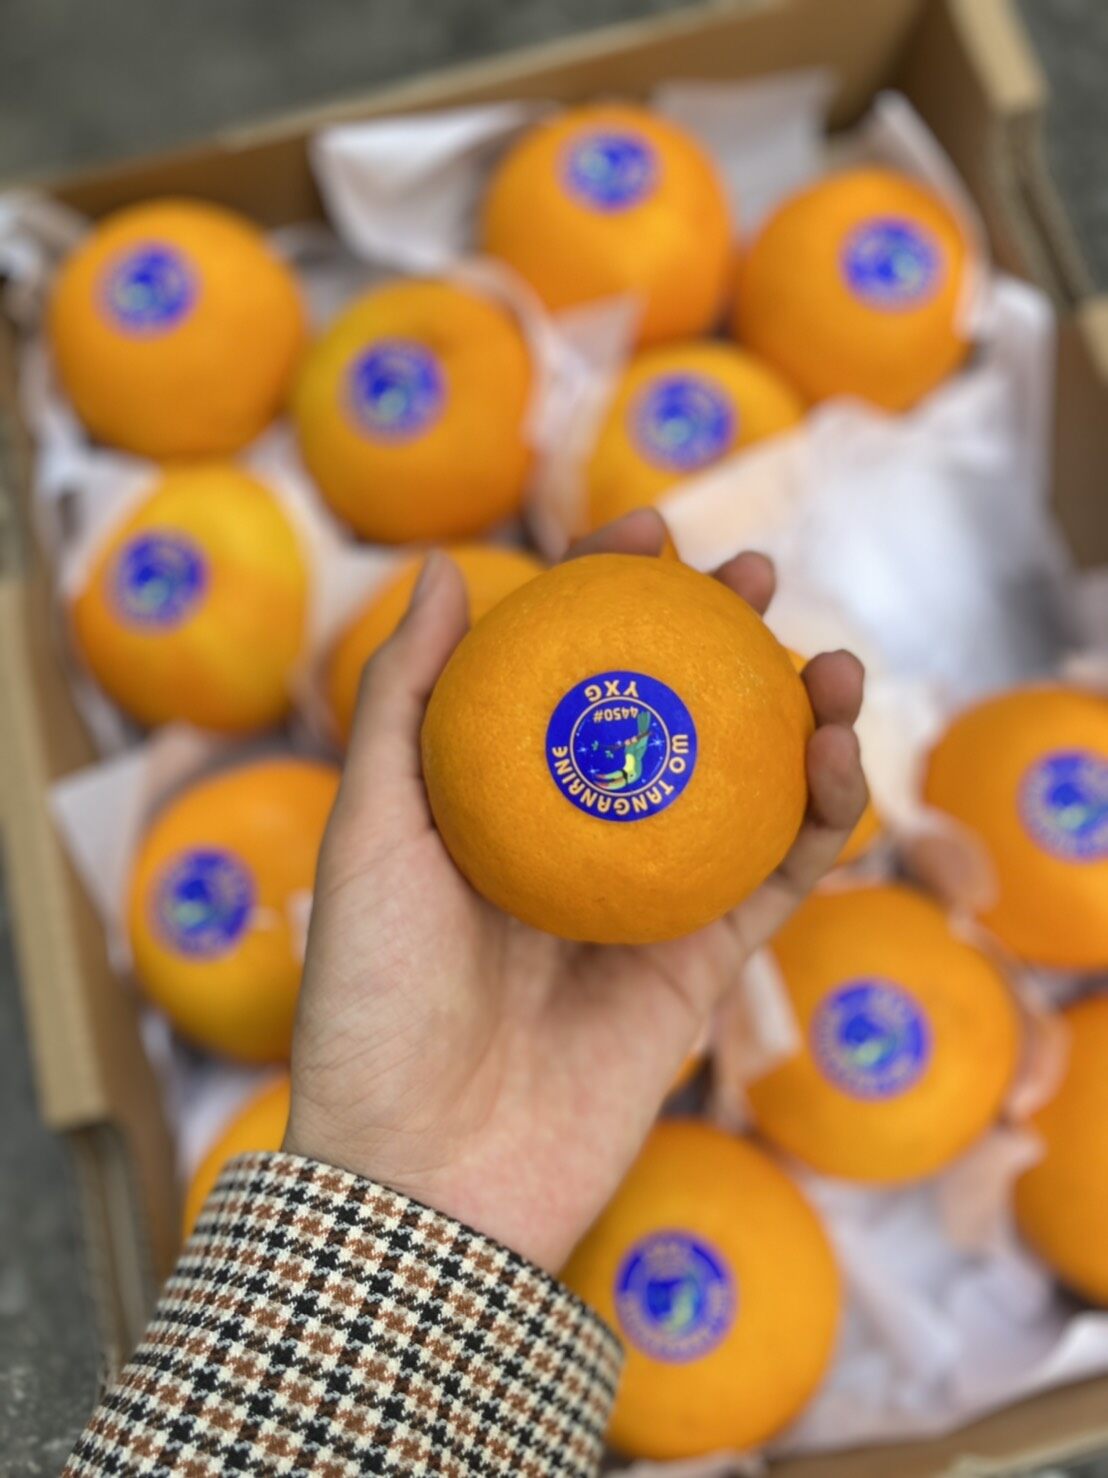 ส้มแมนดาริน ไต้หวัน Mandarin Orange (1แพค/ไซส์XL) (TAIWAN) ~ลดพิเศษ~ส่งฟรี~ ผลไม้นำเข้า ส้มไต้หวัน ตรานกเงือก YXG ส้มนกแก้ว ส้มตรานกแก้ว HFT Wo Tangerine Wogan  ยี่ห้อ ตรานกเงือก (7ลูก)